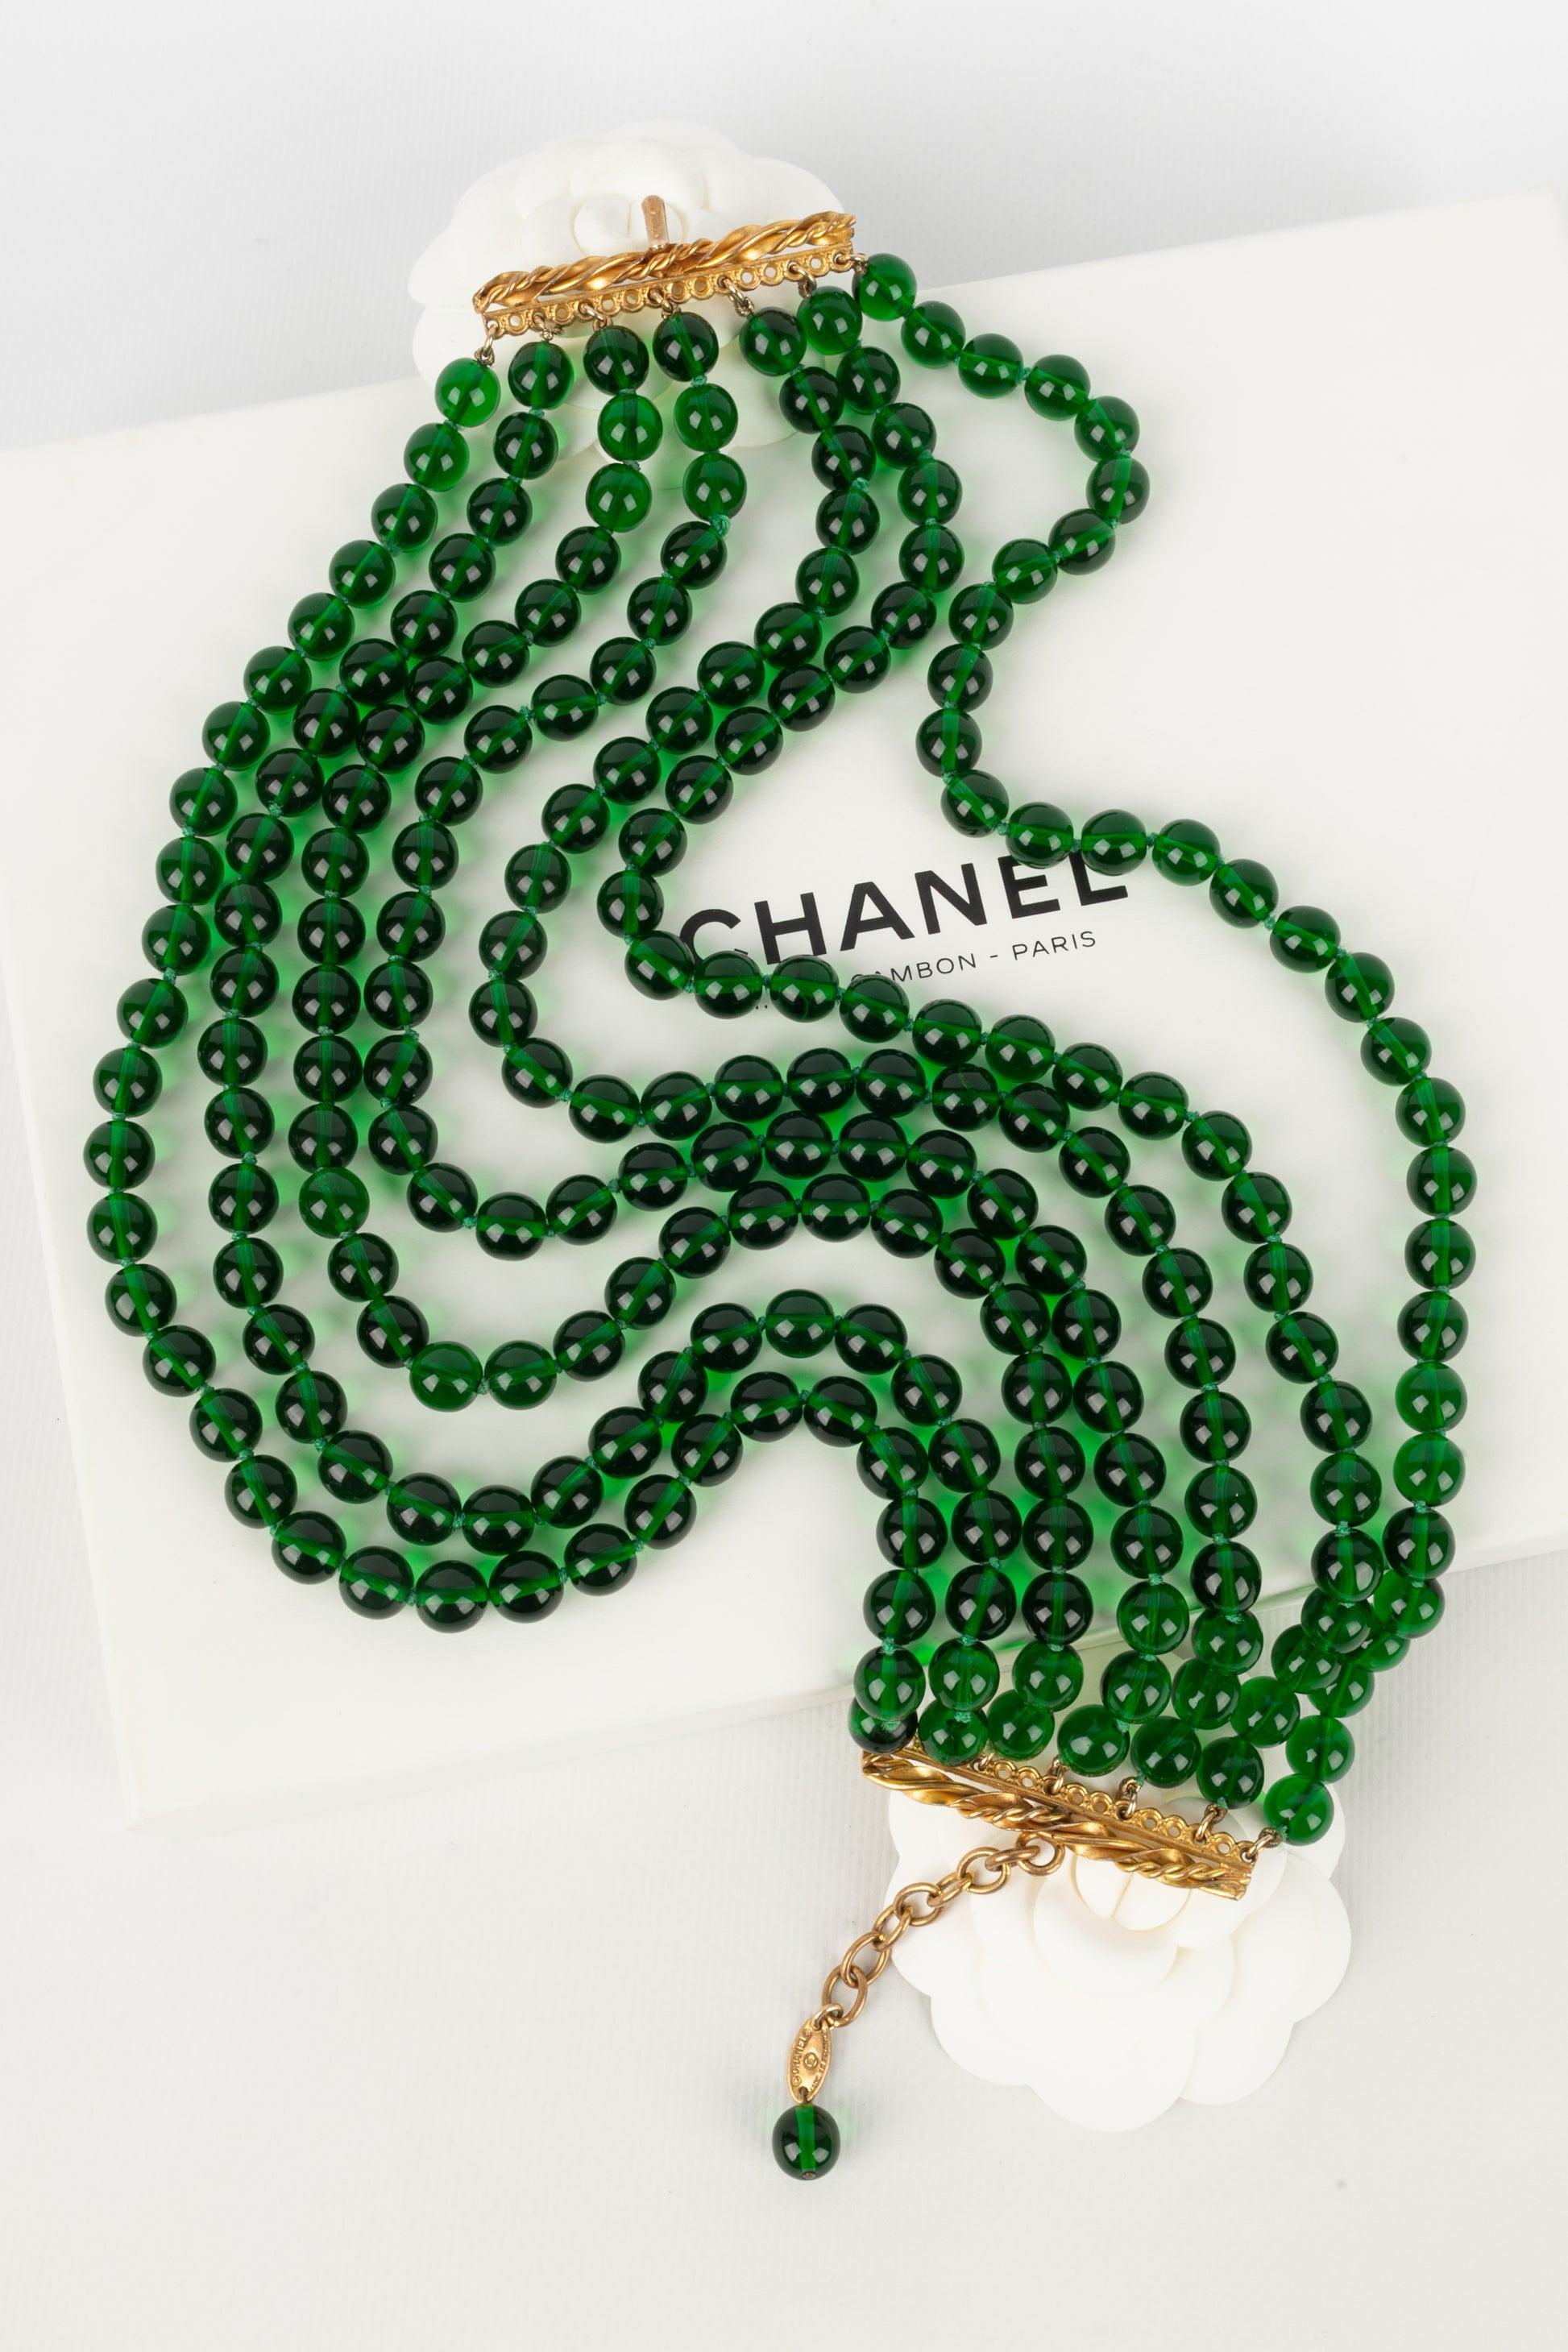 Chanel - (Made in France) Kurze Halskette aus mehreren Reihen grüner Glasperlen, die in Knoten montiert sind. Schmuckstücke aus den 1980er Jahren.

Zusätzliche Informationen:
Zustand: Sehr guter Zustand
Abmessungen: Länge: 36 cm bis 42 cm
Zeitraum: